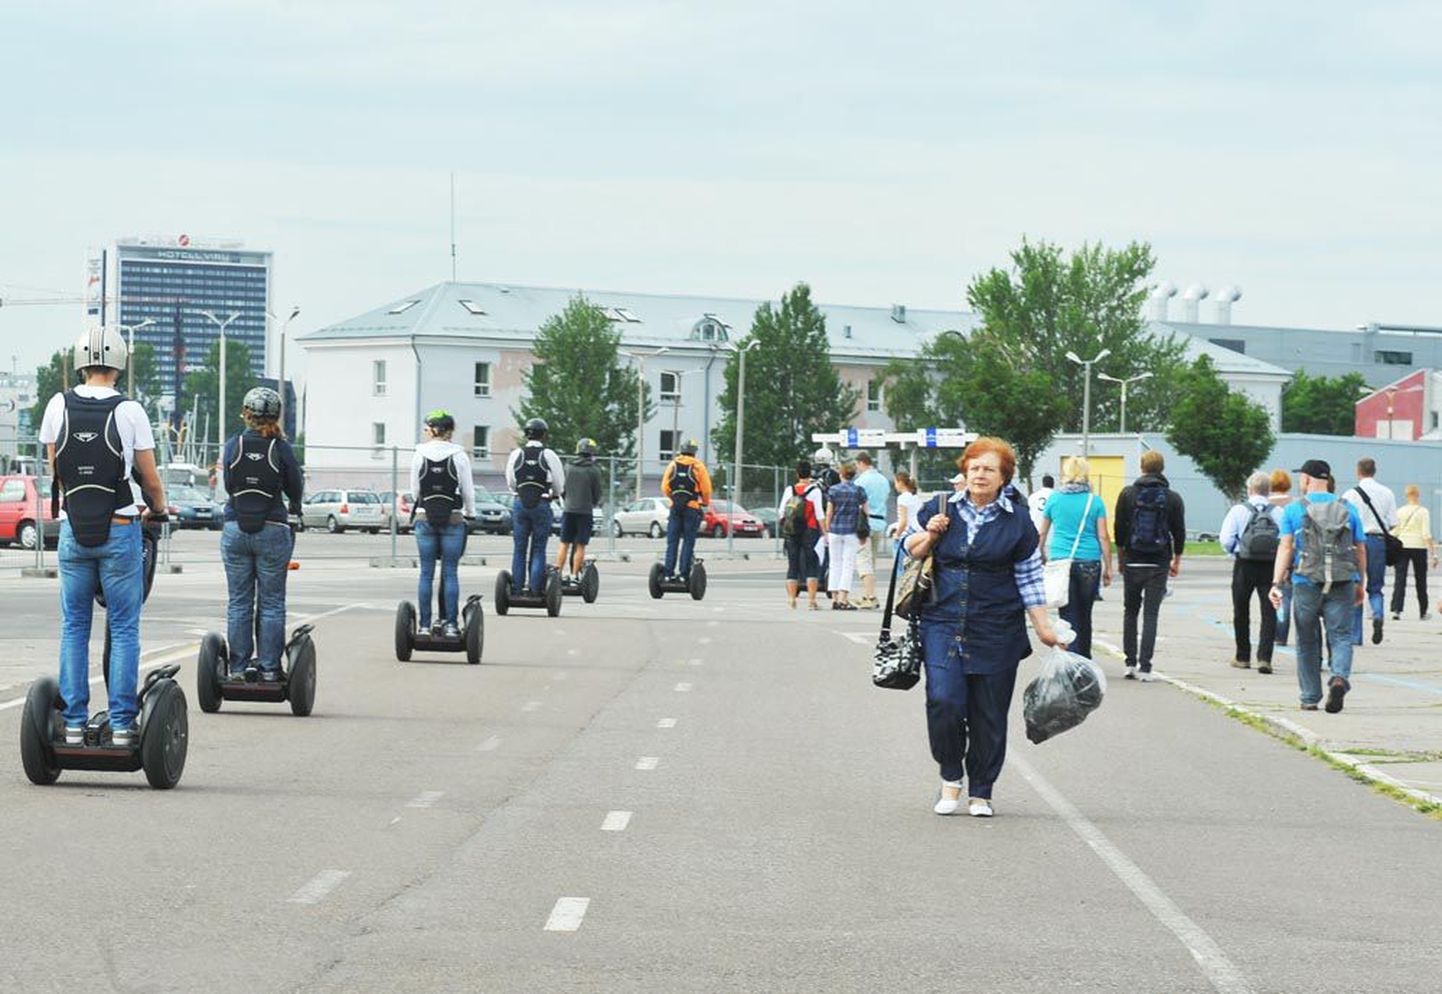 Kiiver pähe ja seagway jalge alla – kruiisituristid suunduvad Eesti pealinnaga tutvuma. Vanemad turistid eelistavad pigem jalutada.